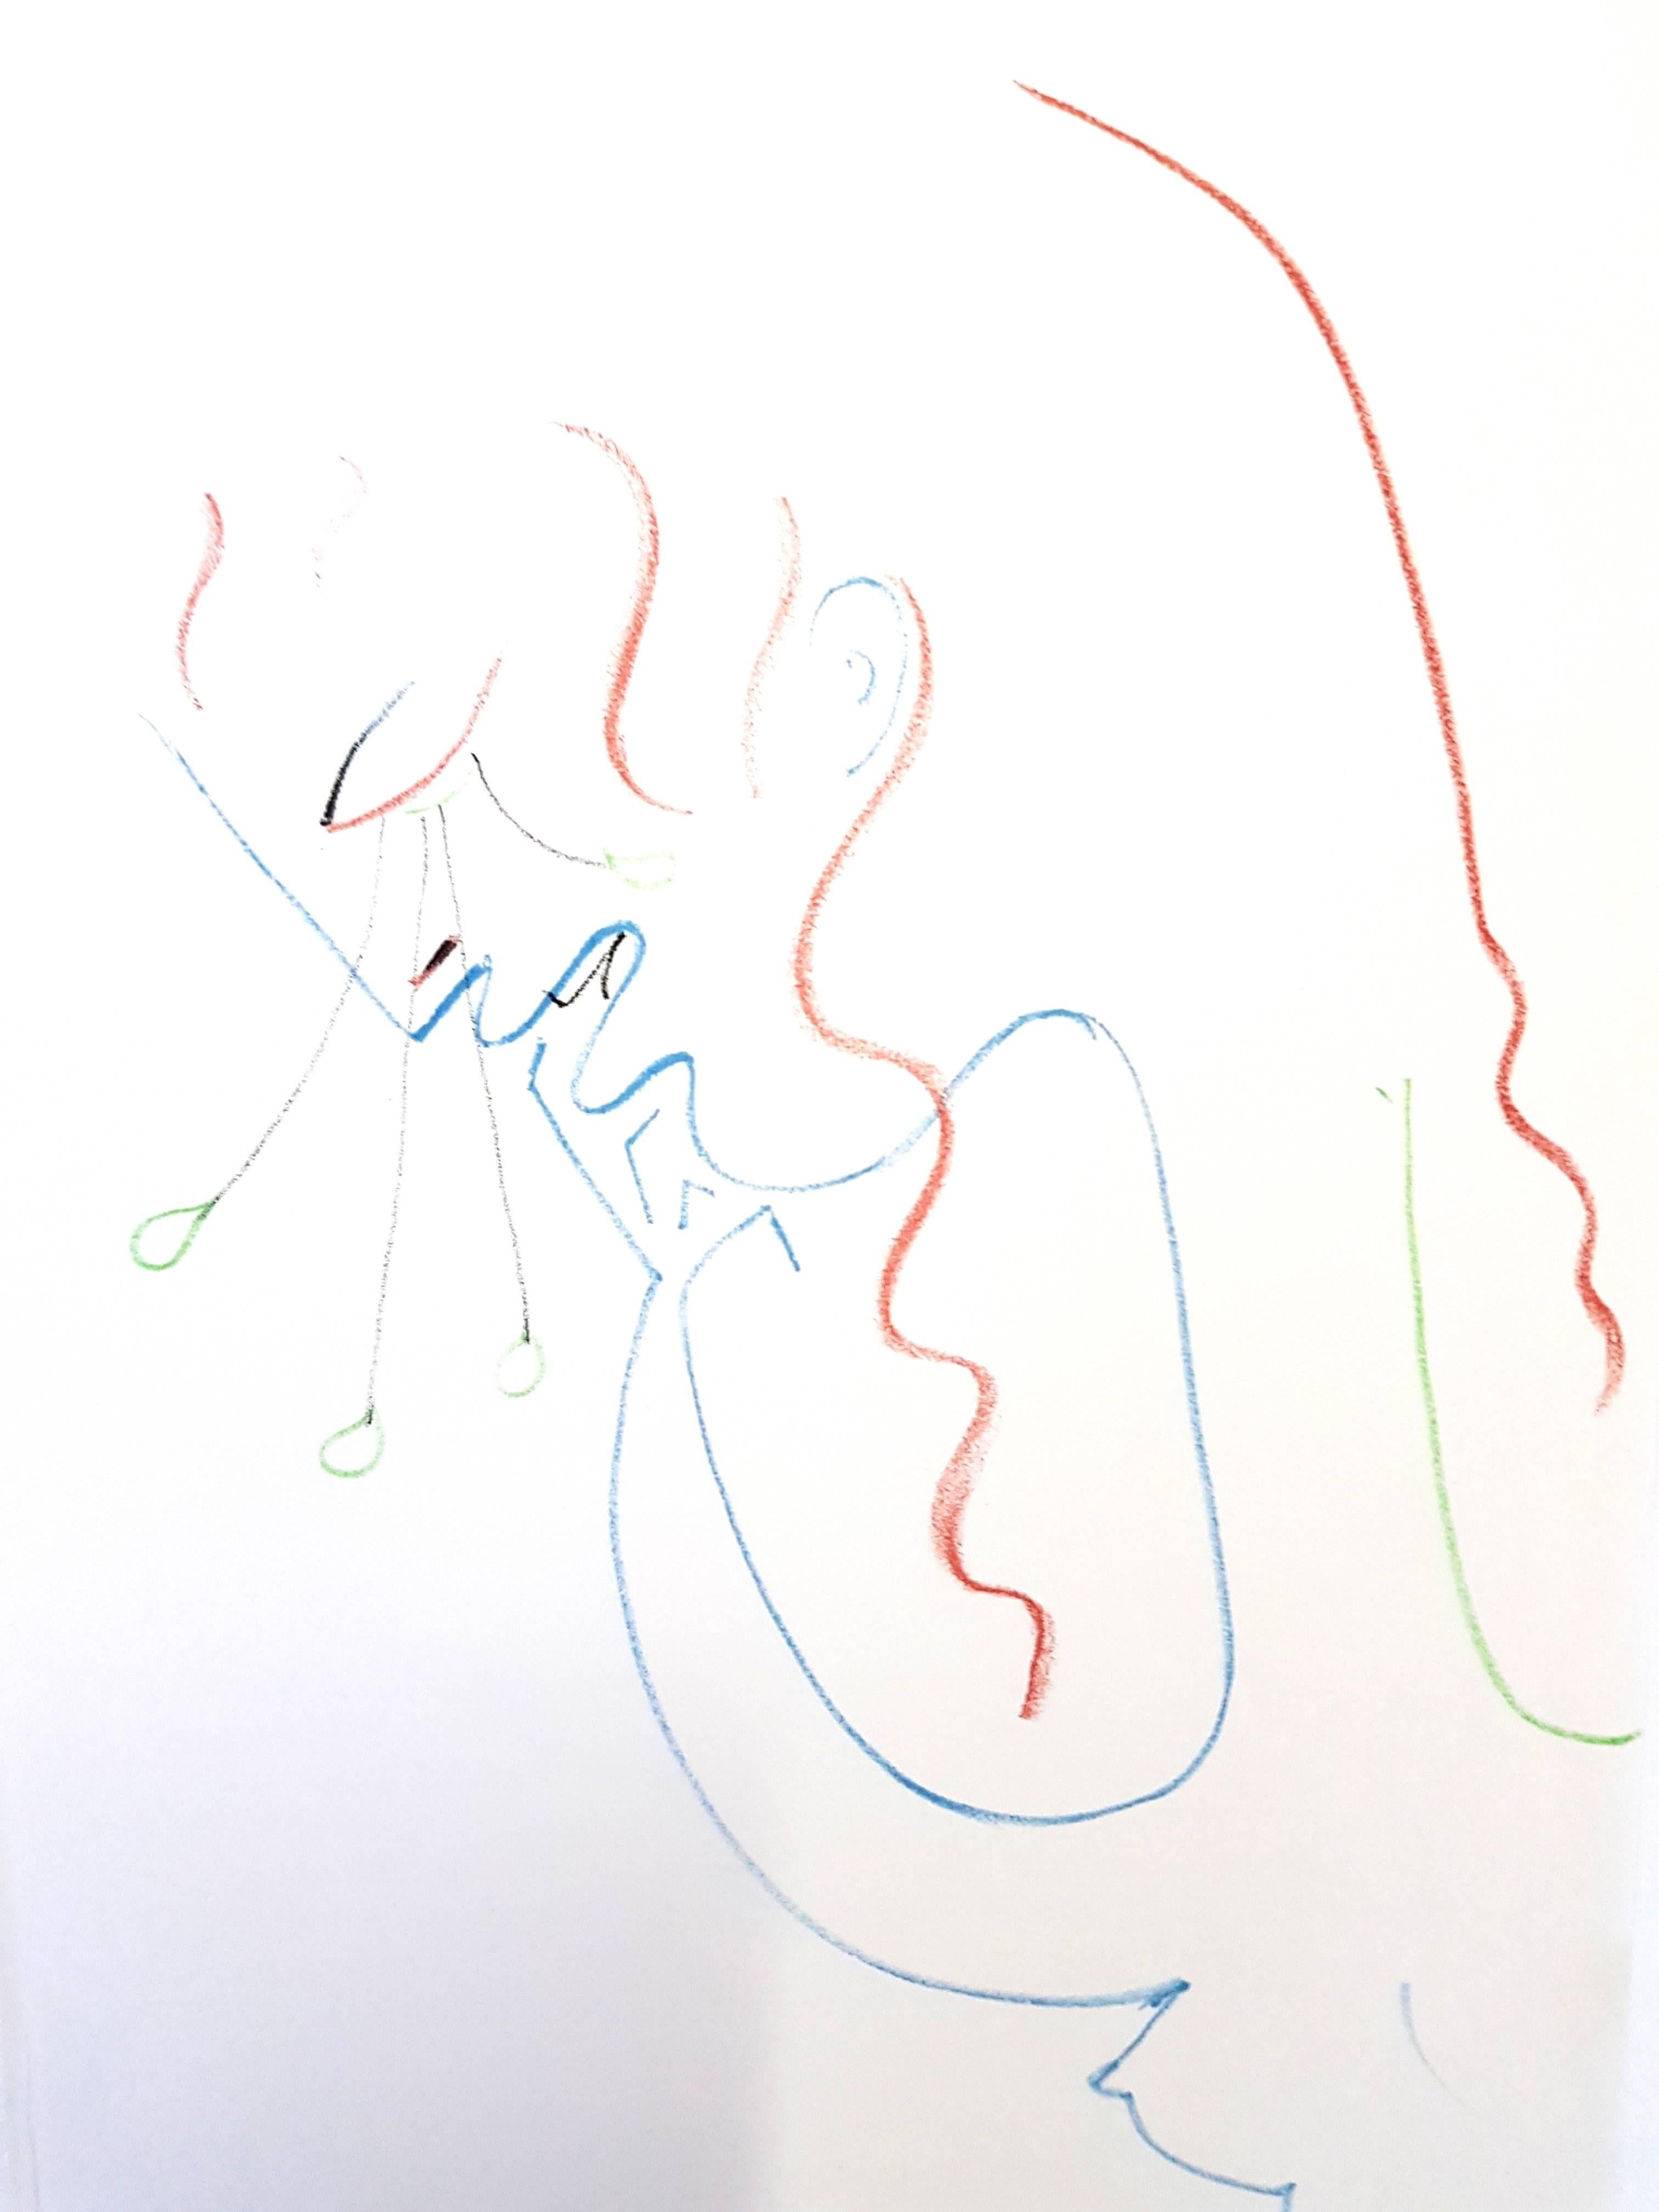 Original-Lithographie von Jean Cocteau
Titel: Antigone
Aus der Mappe "Théâtre", 1957
Auflage: 207 / 8800
Abmessungen: 22,5 x 15,5 cm 

Jean Cocteau

Der Schriftsteller, Künstler und Filmregisseur Jean Cocteau war eine der einflussreichsten kreativen